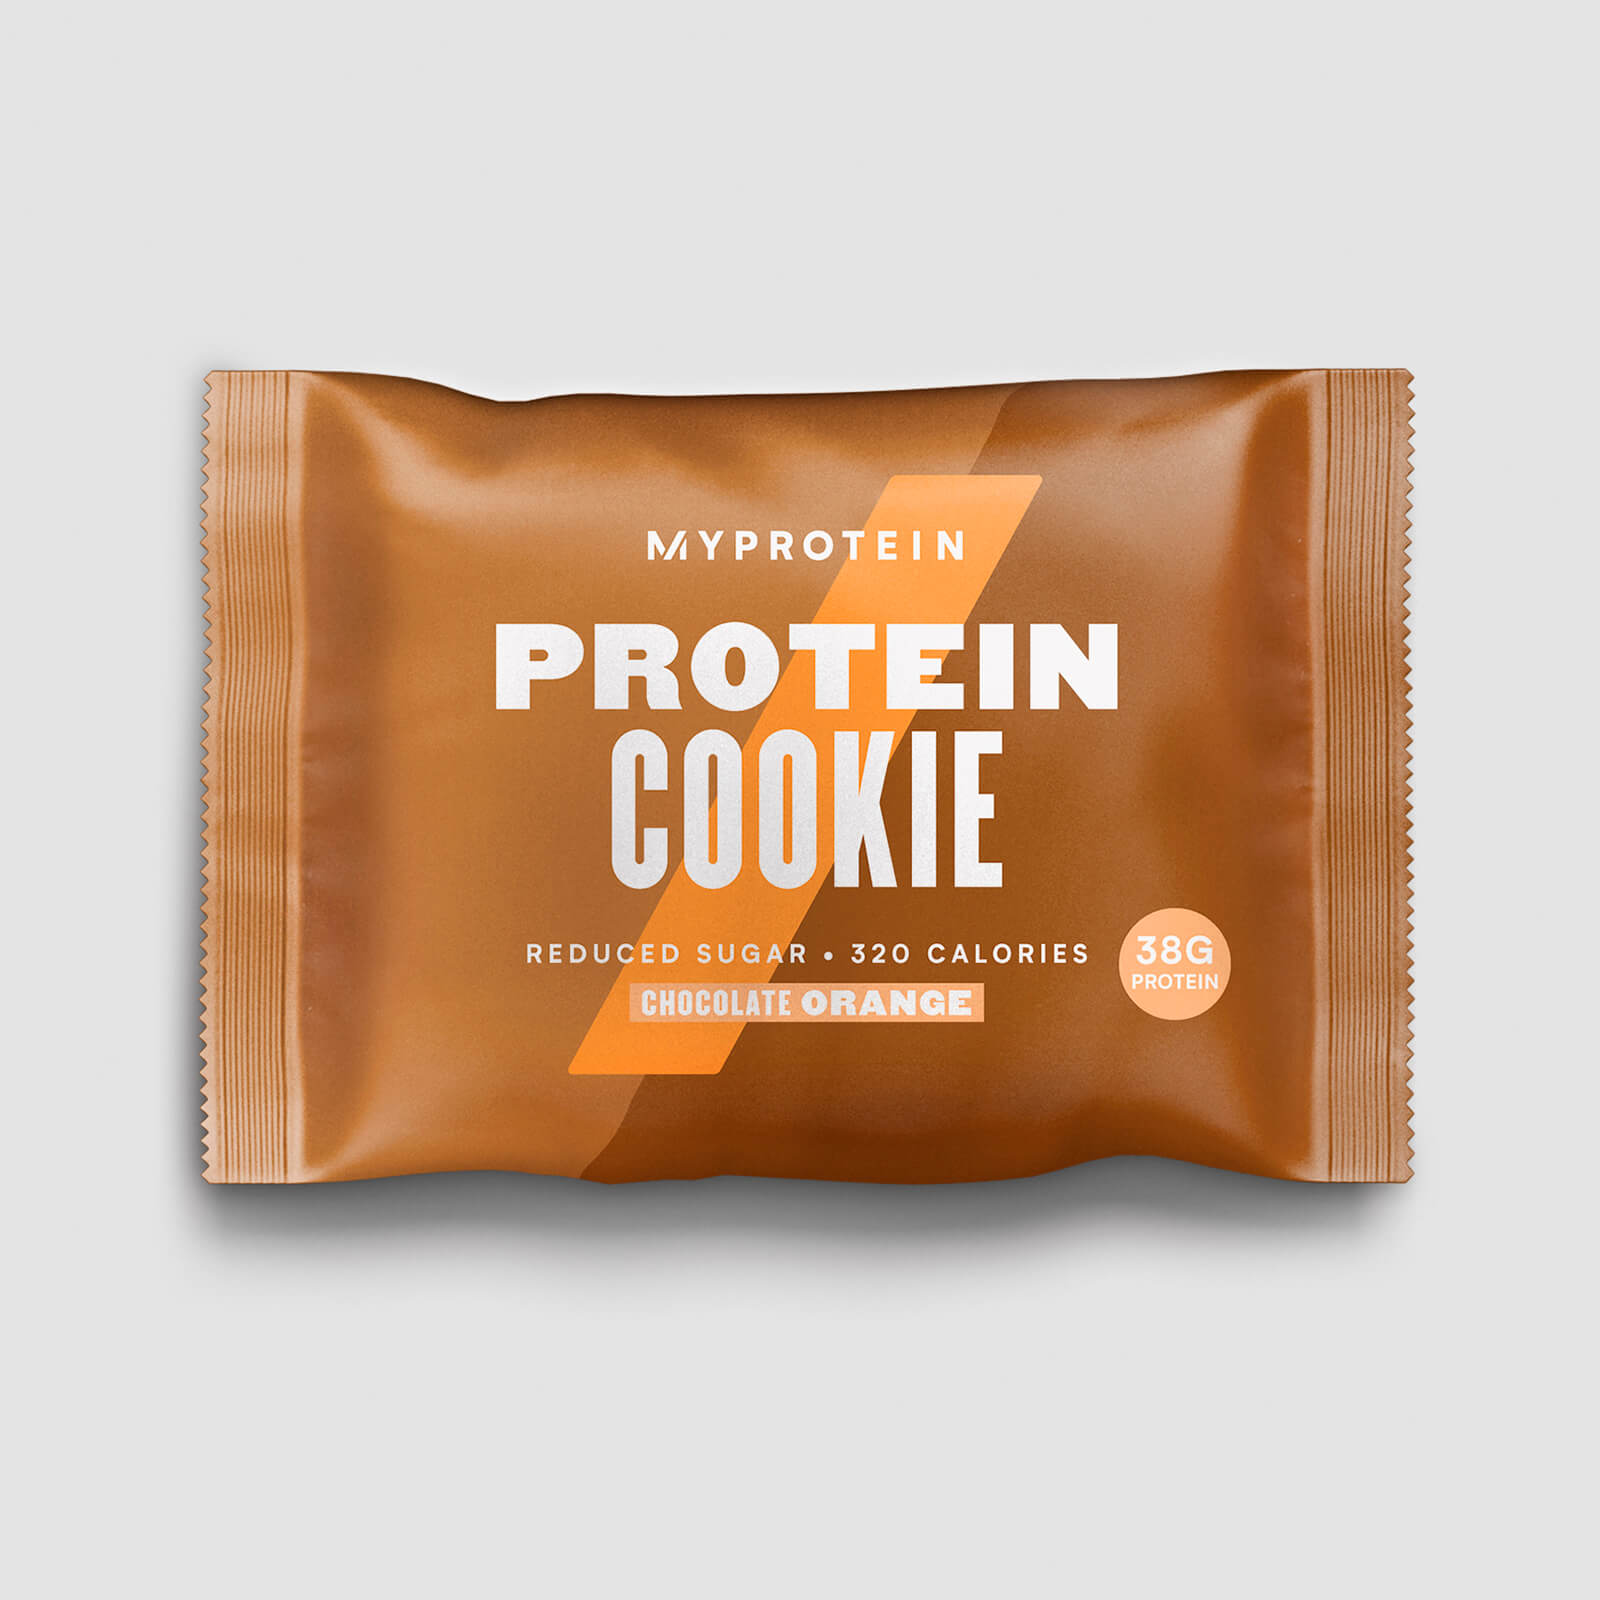 Myprotein Protein Cookie - 12 x 75g - New - Chocolate Orange